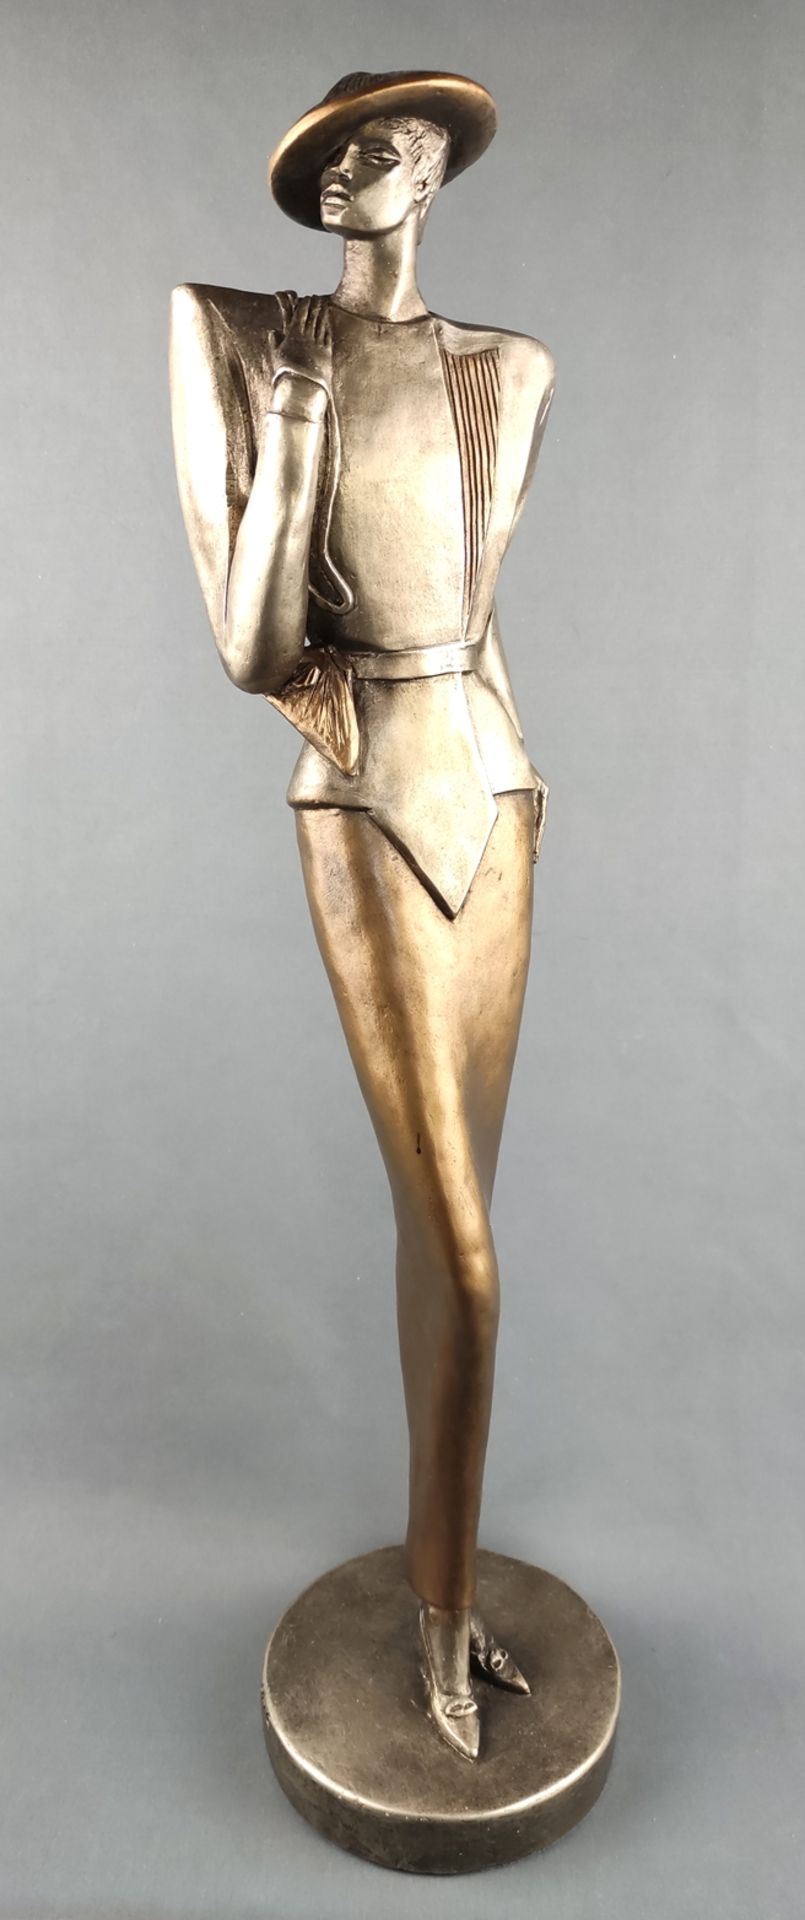 Proding, Austin (20. Jahrhundert) "Elegante Dame", in Designeroutfit, Keramik, bemalt in Gold und S